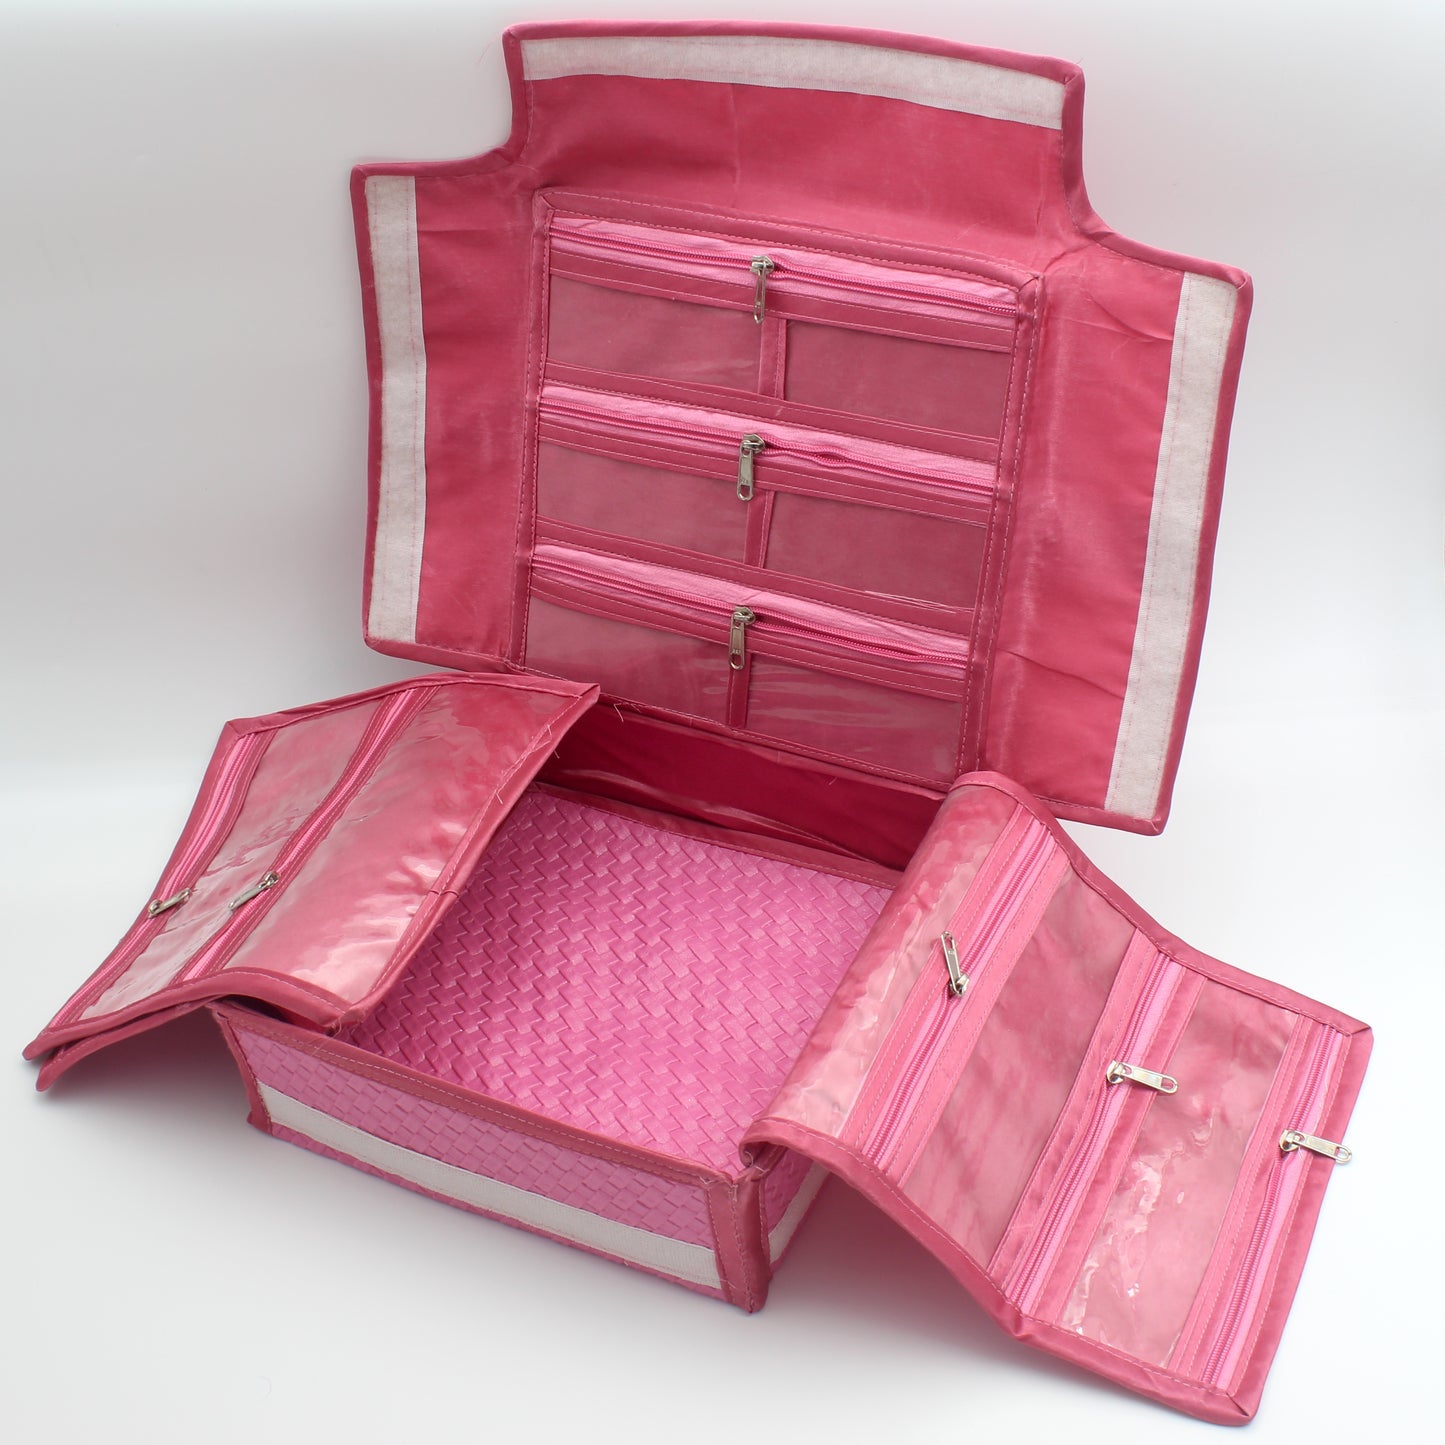 Foldable Multi Jewellery Organiser Suitcase Super Kit